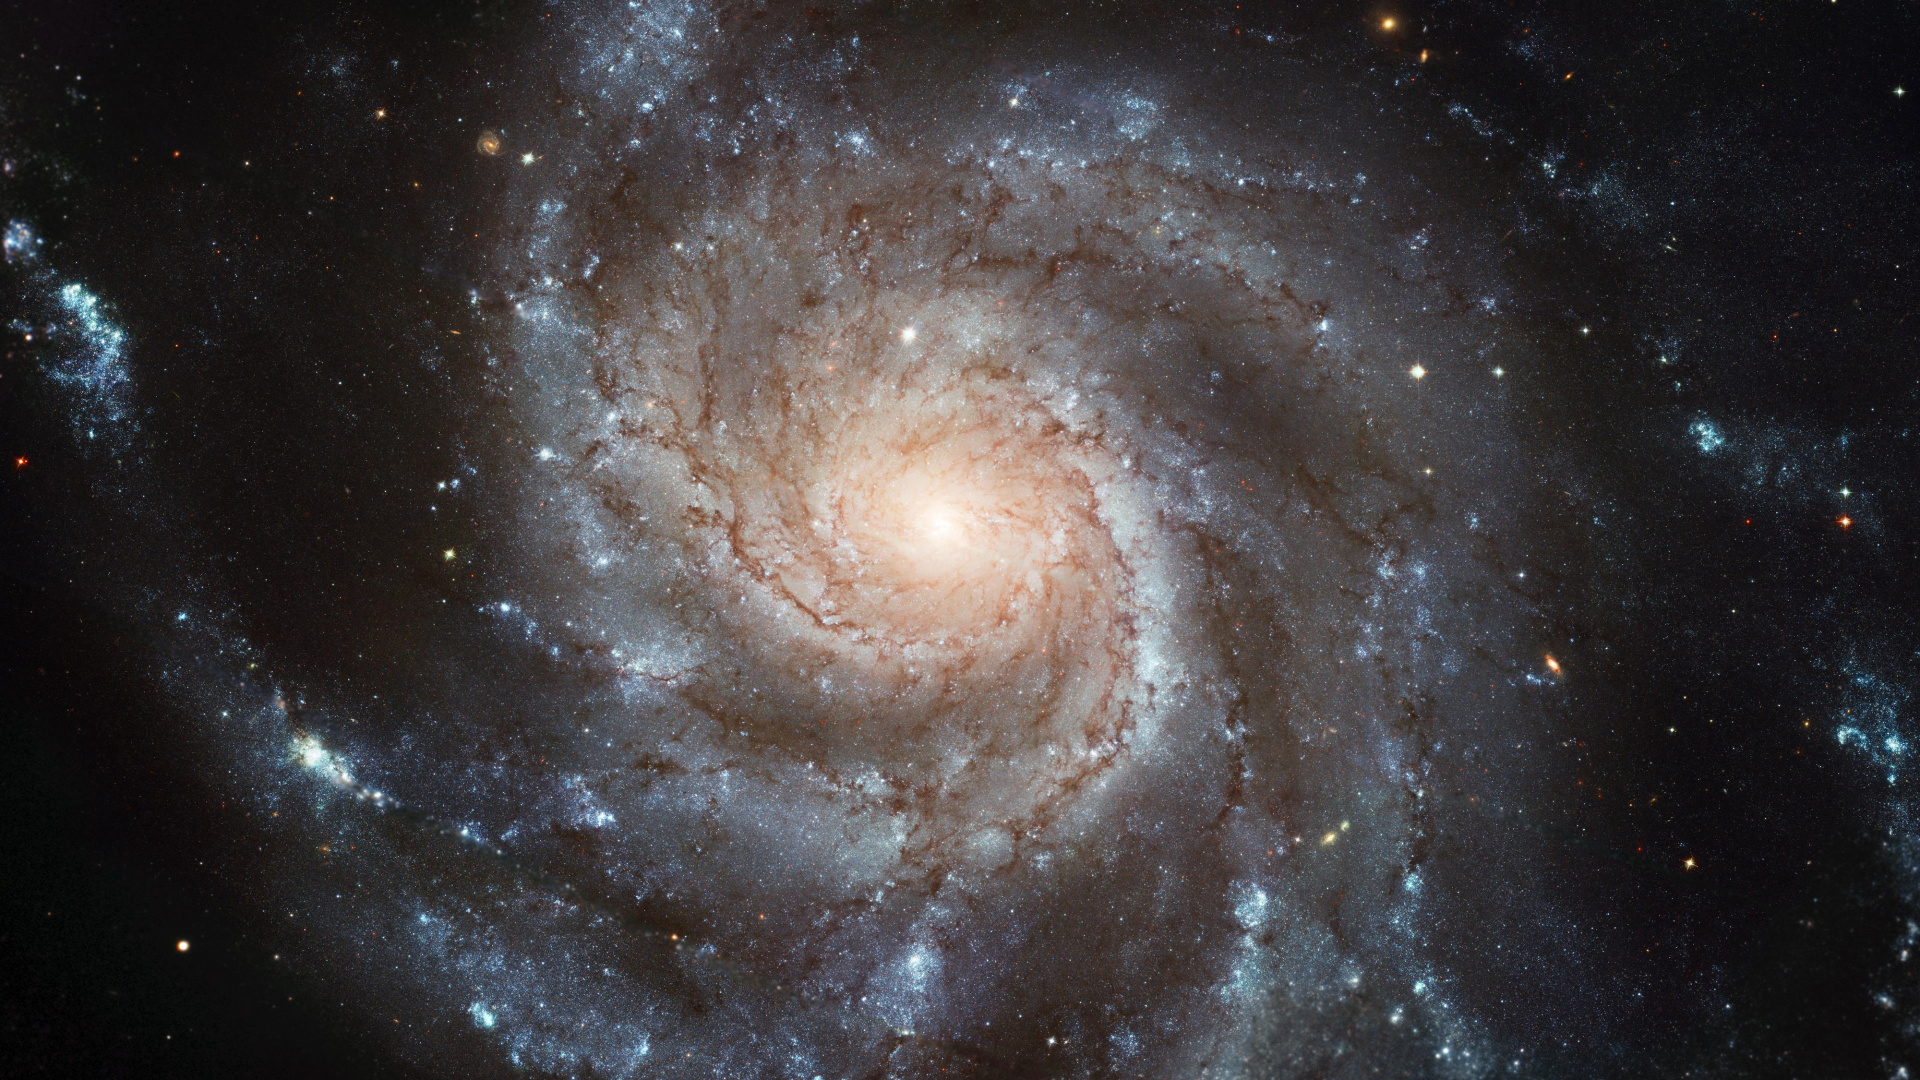 螺旋星系, 哈勃太空望远镜, 天文学, 天文学对象, 宇宙 壁纸 1920x1080 允许